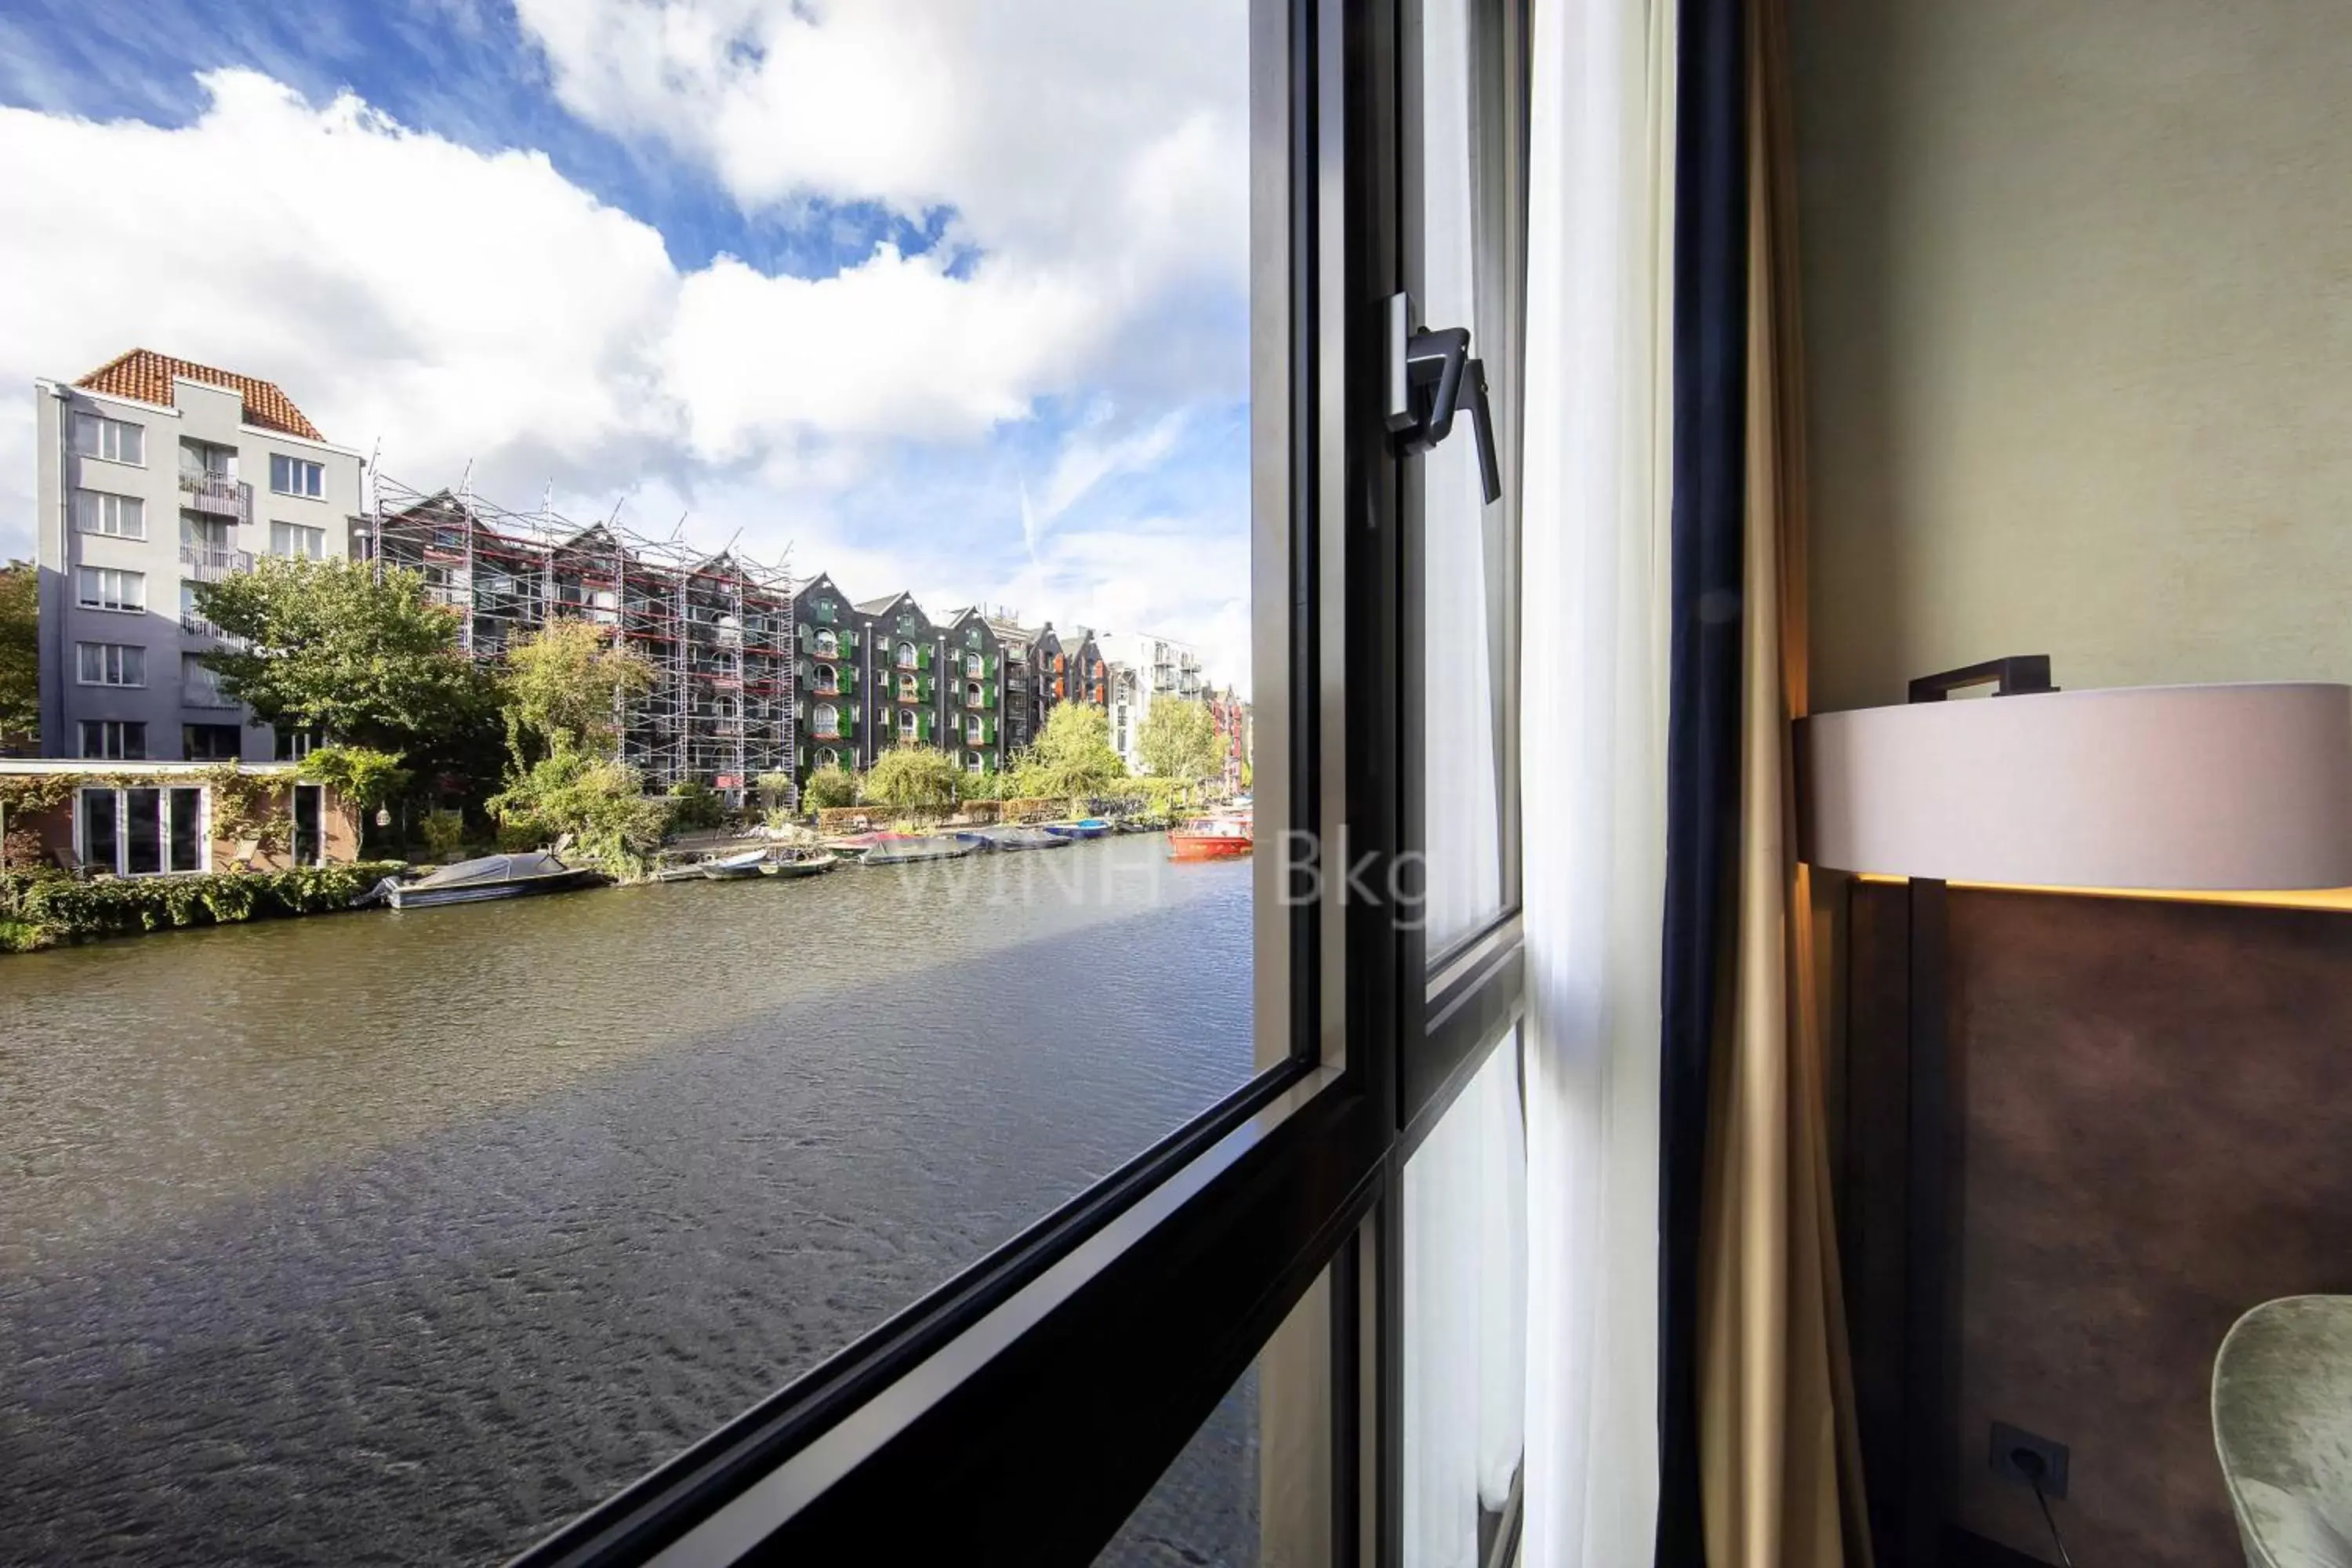 River view in Monet Garden Hotel Amsterdam